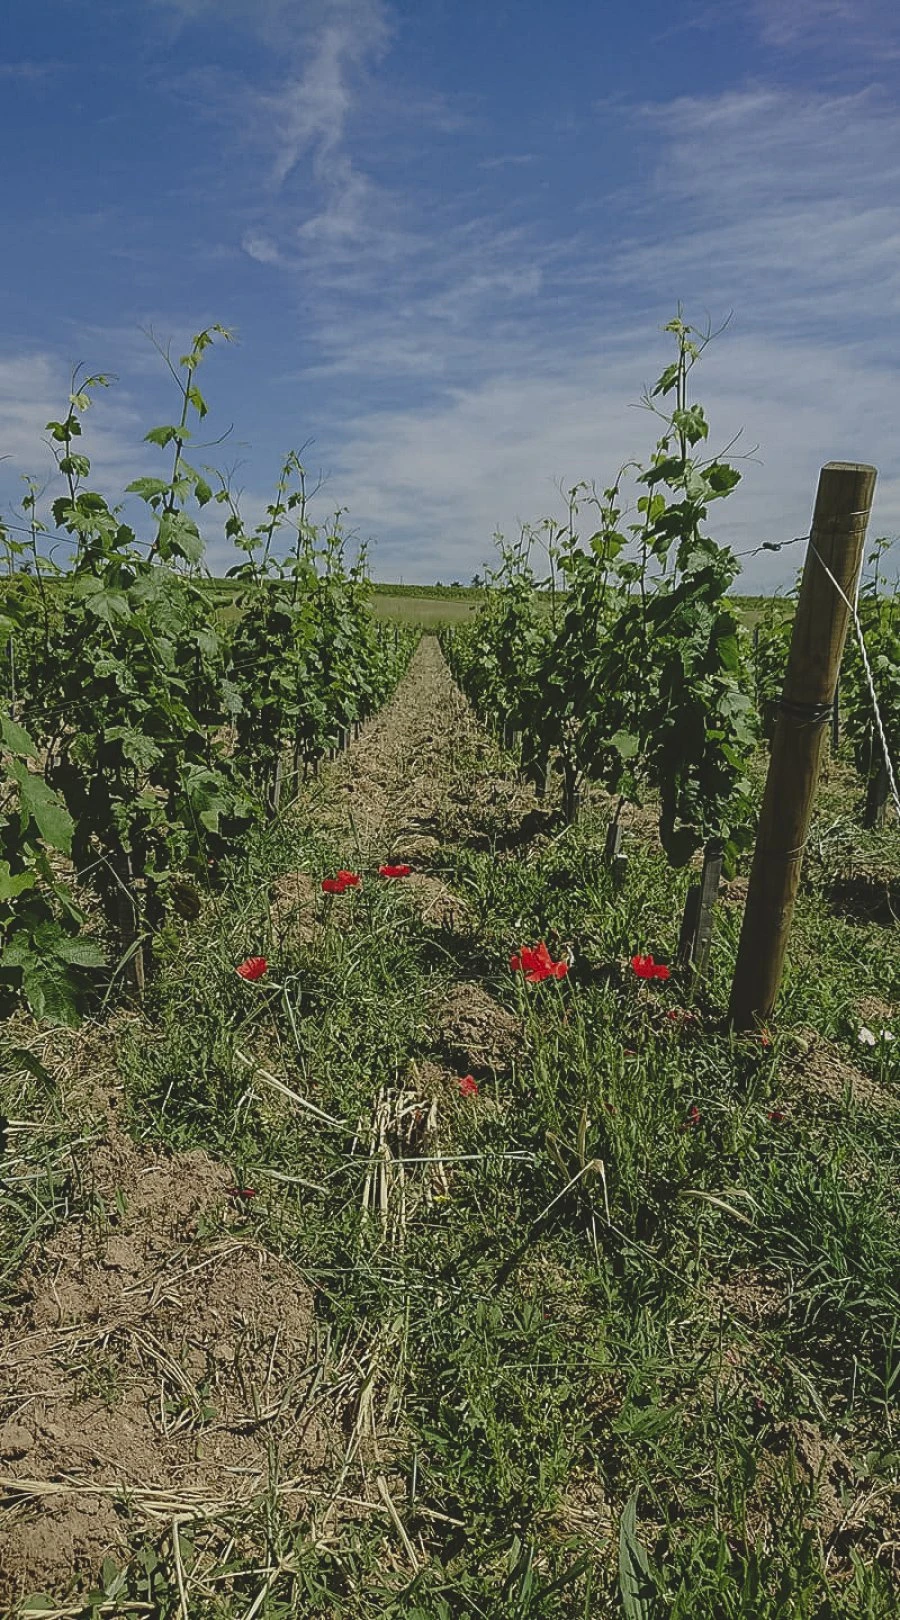 Domaine Les Capréoles - Vineyard